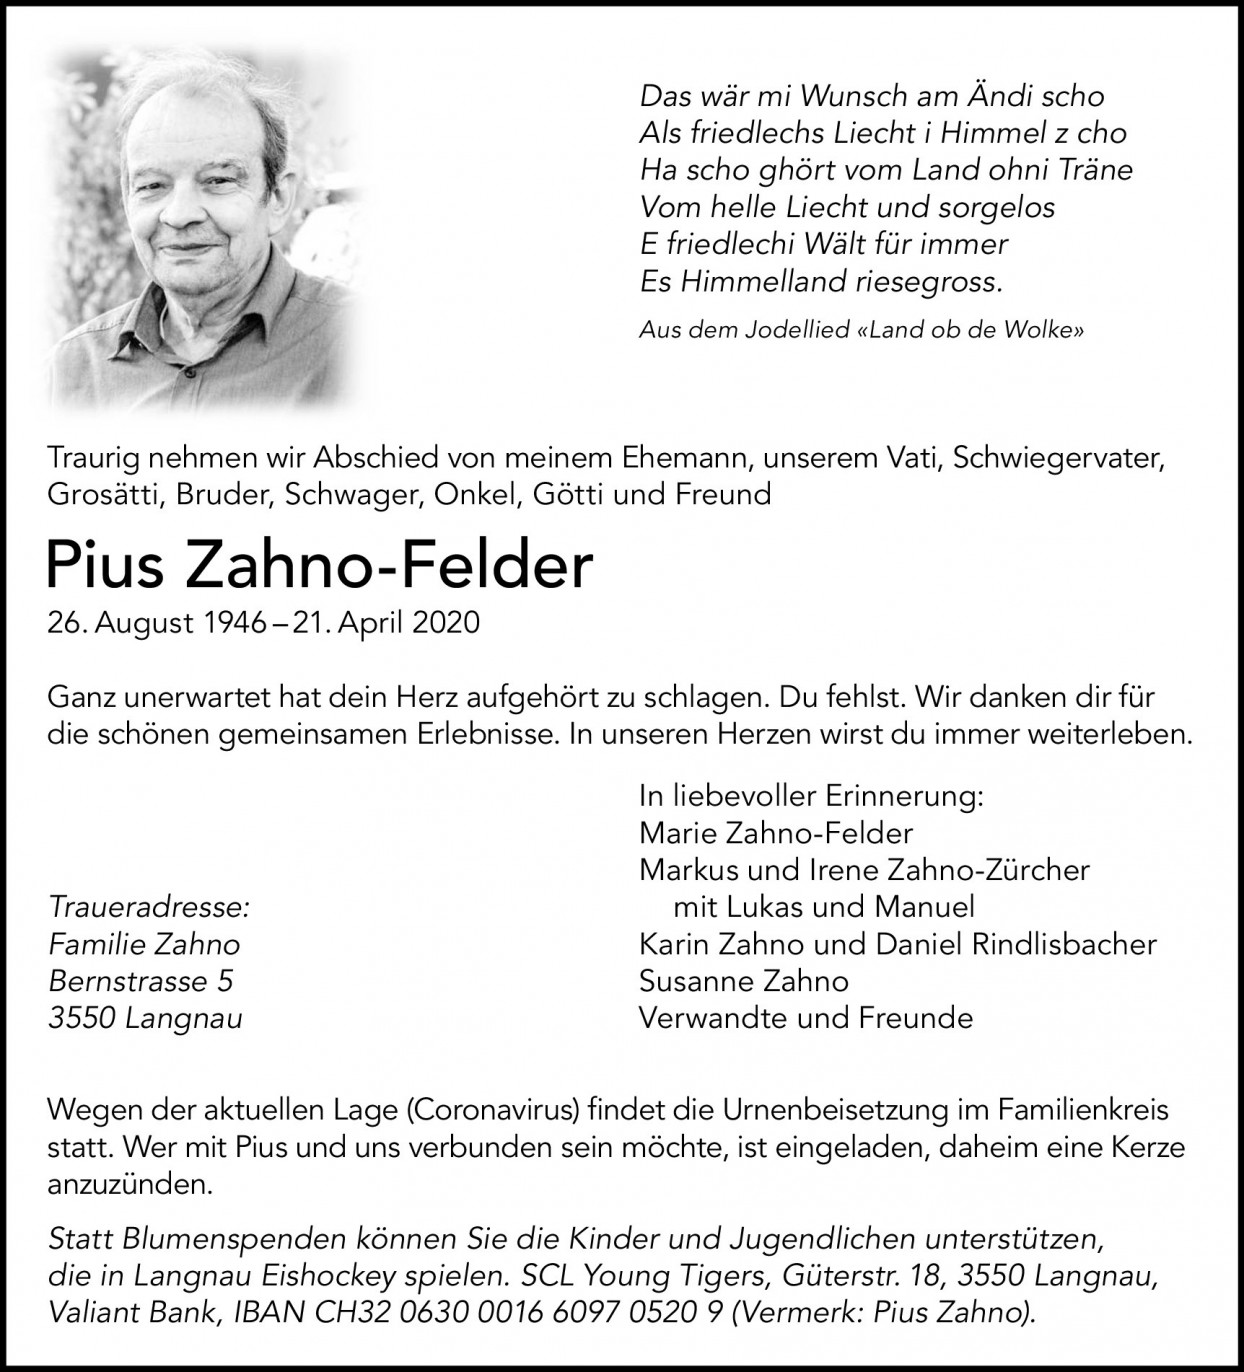 Pius Zahno-Felder